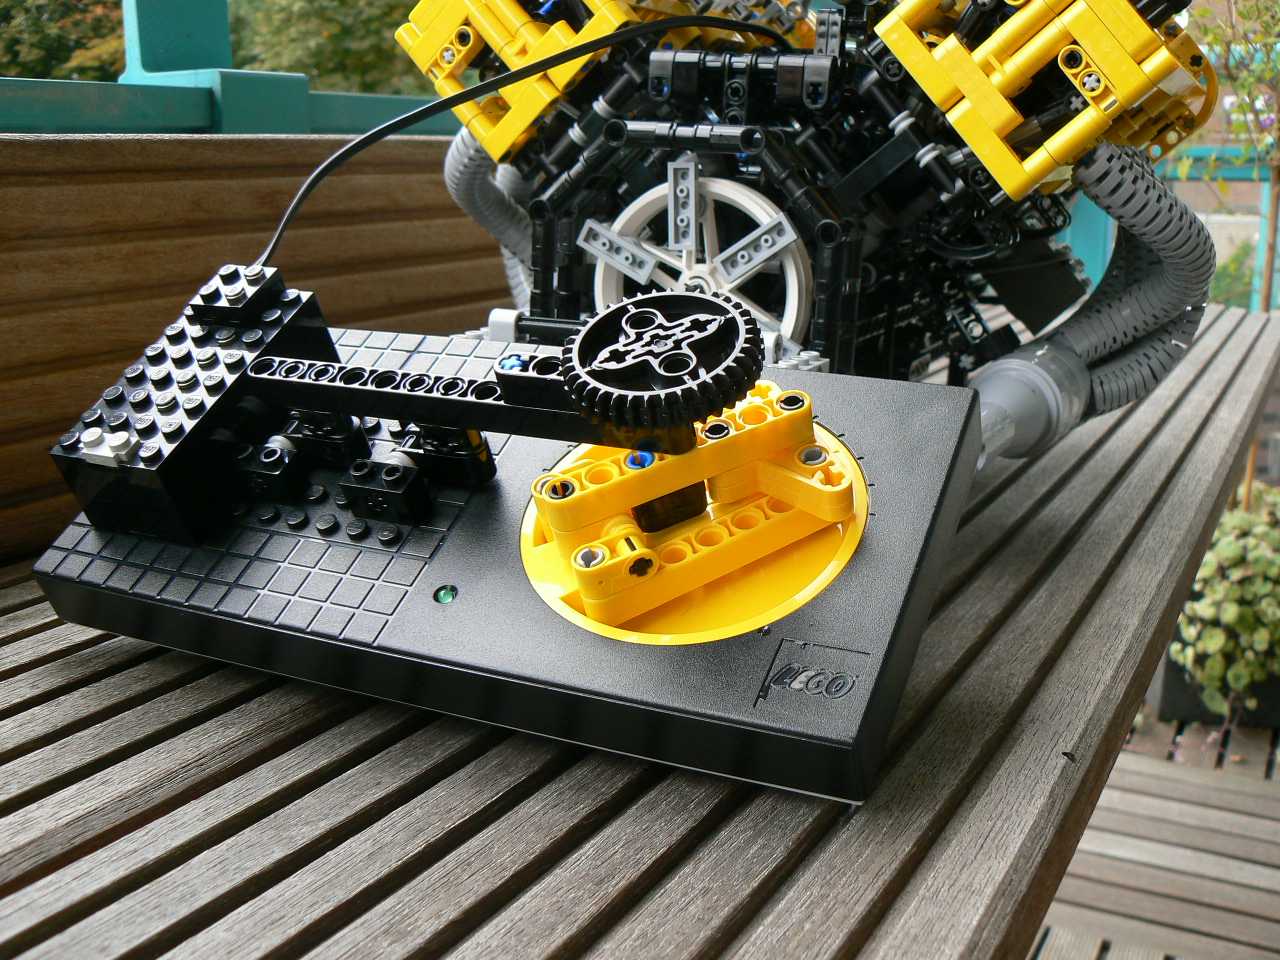 Лего схемы машины своими руками